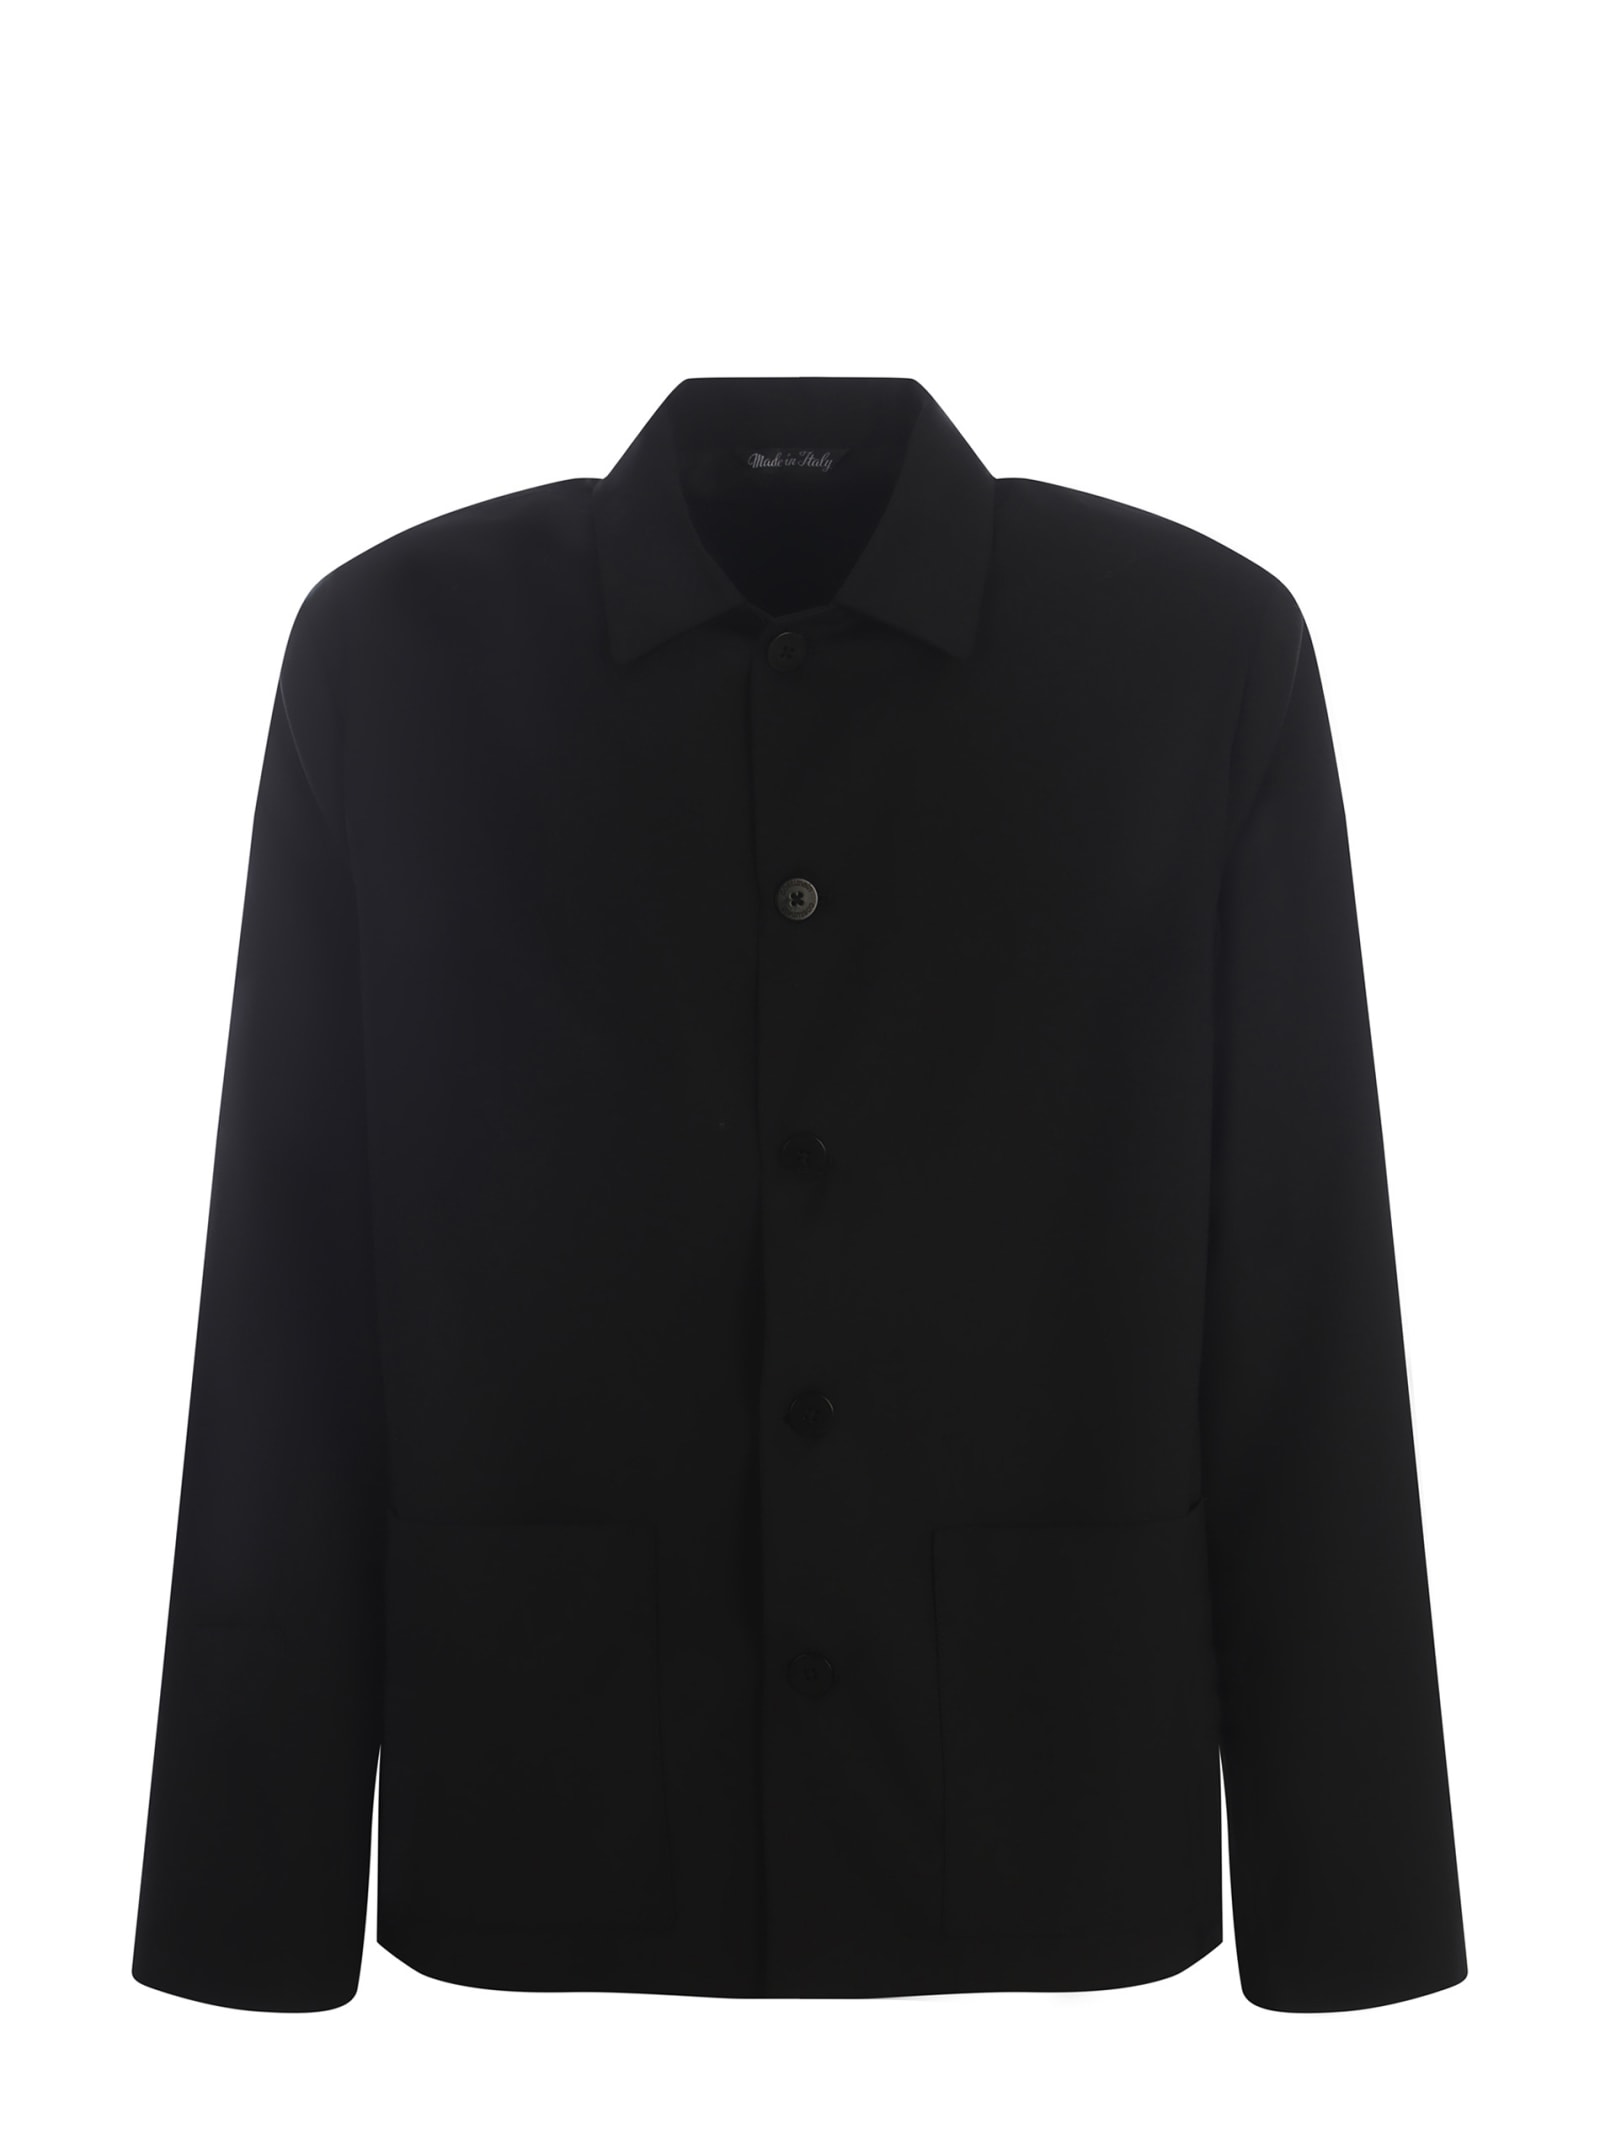 Costumein Jacket  Antoine Made Of Fresh Wool In Black